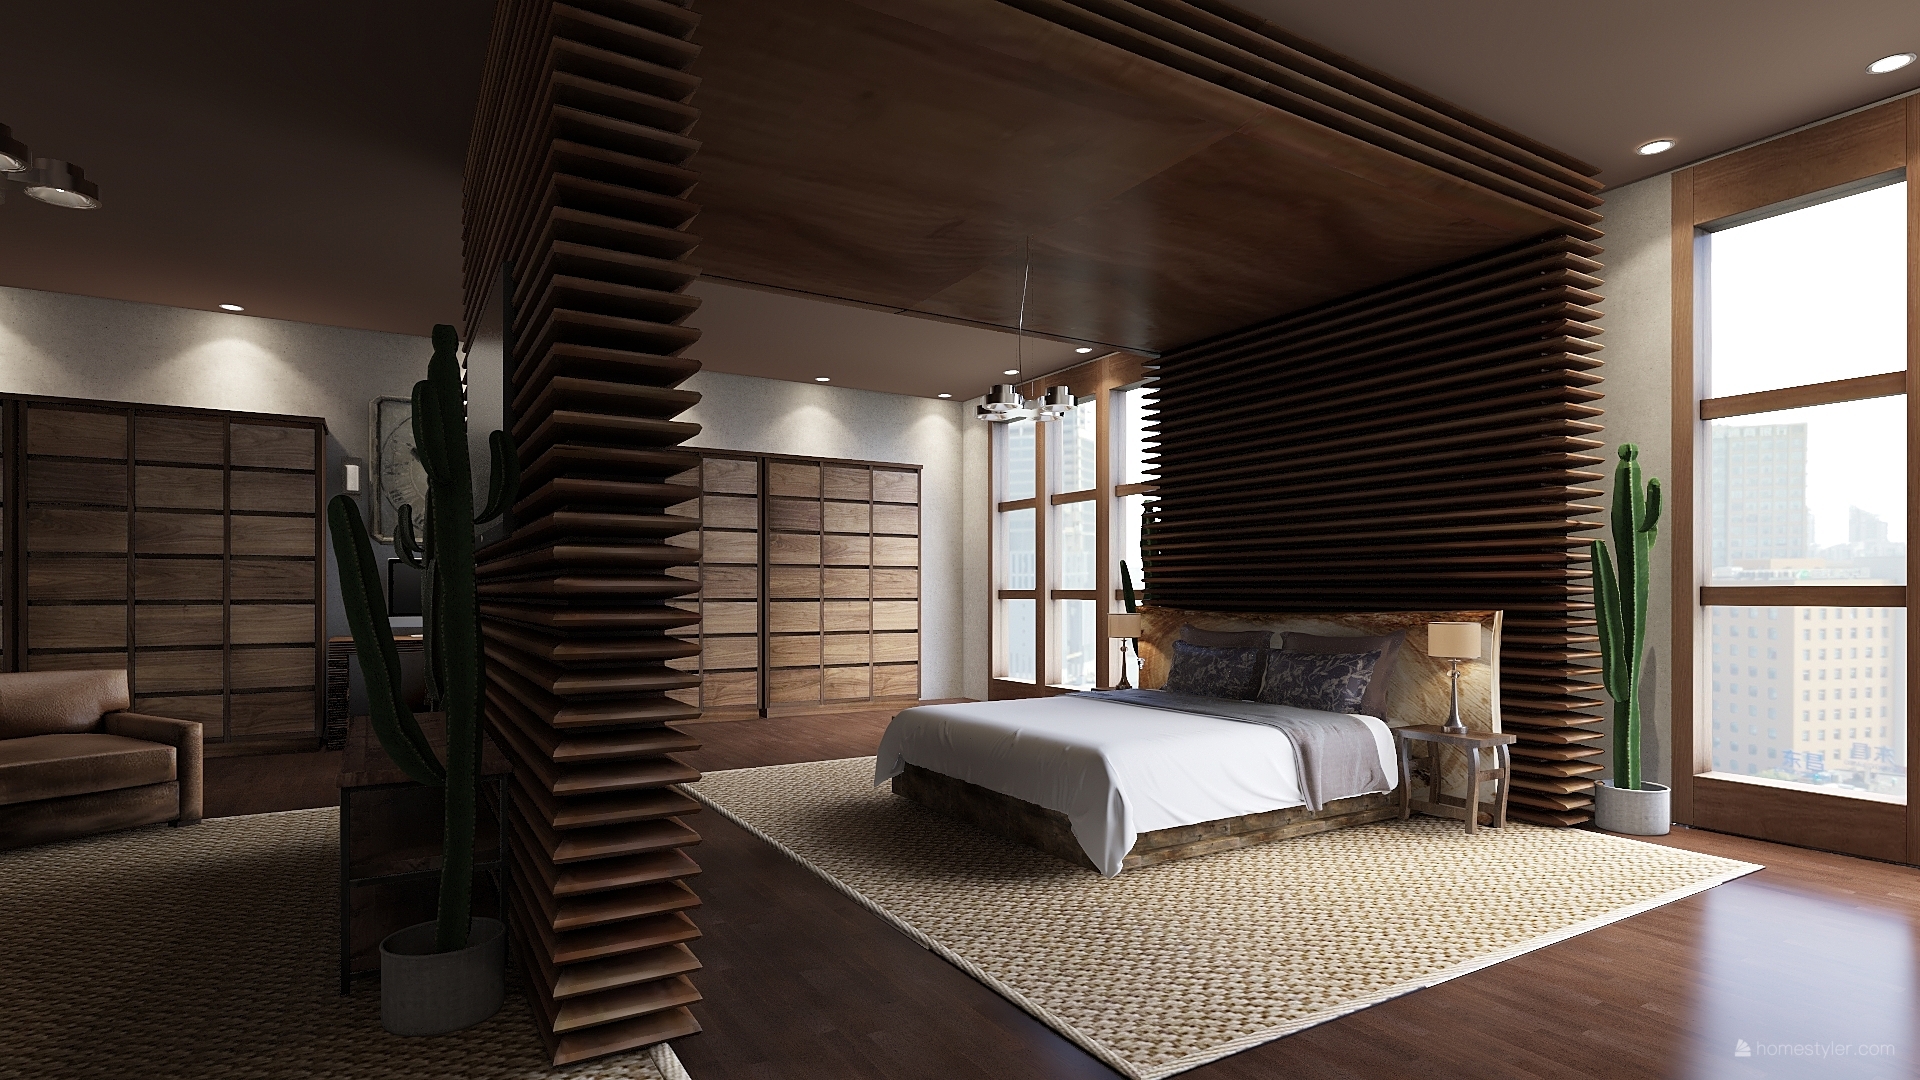 Berkeley Hotel - Luxury Interior Design Project | Helen Green Design